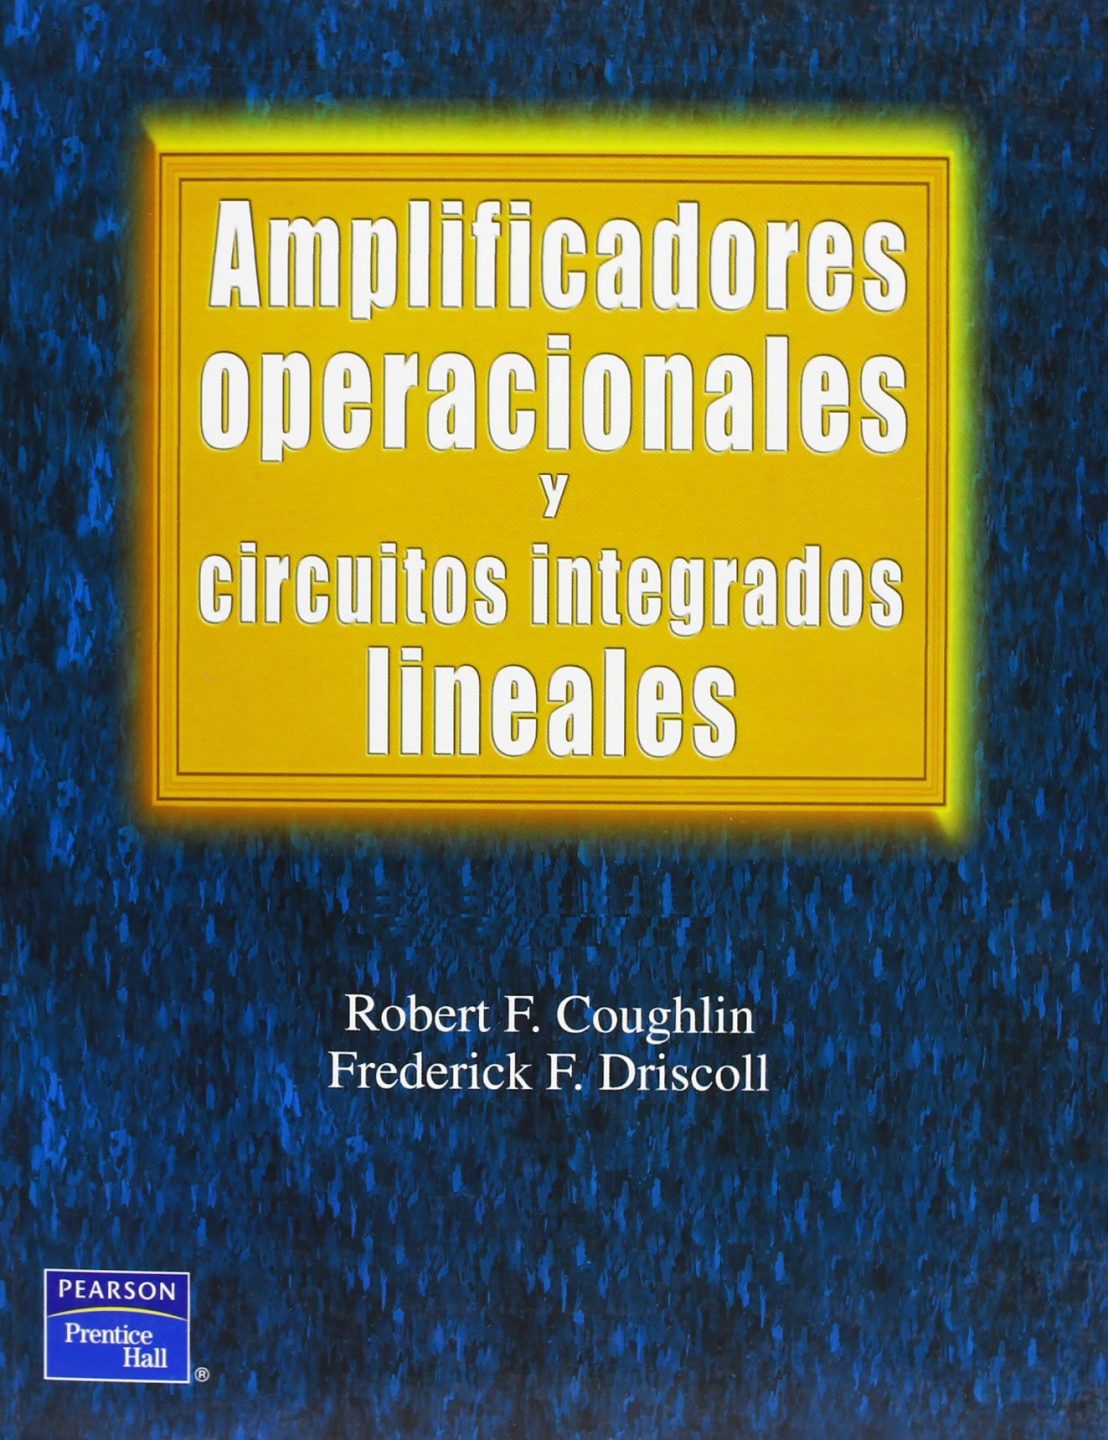 Amplificadores Operacionales y Circuitos Integrados Lineales 1 Edición Robert F. Coughlin PDF